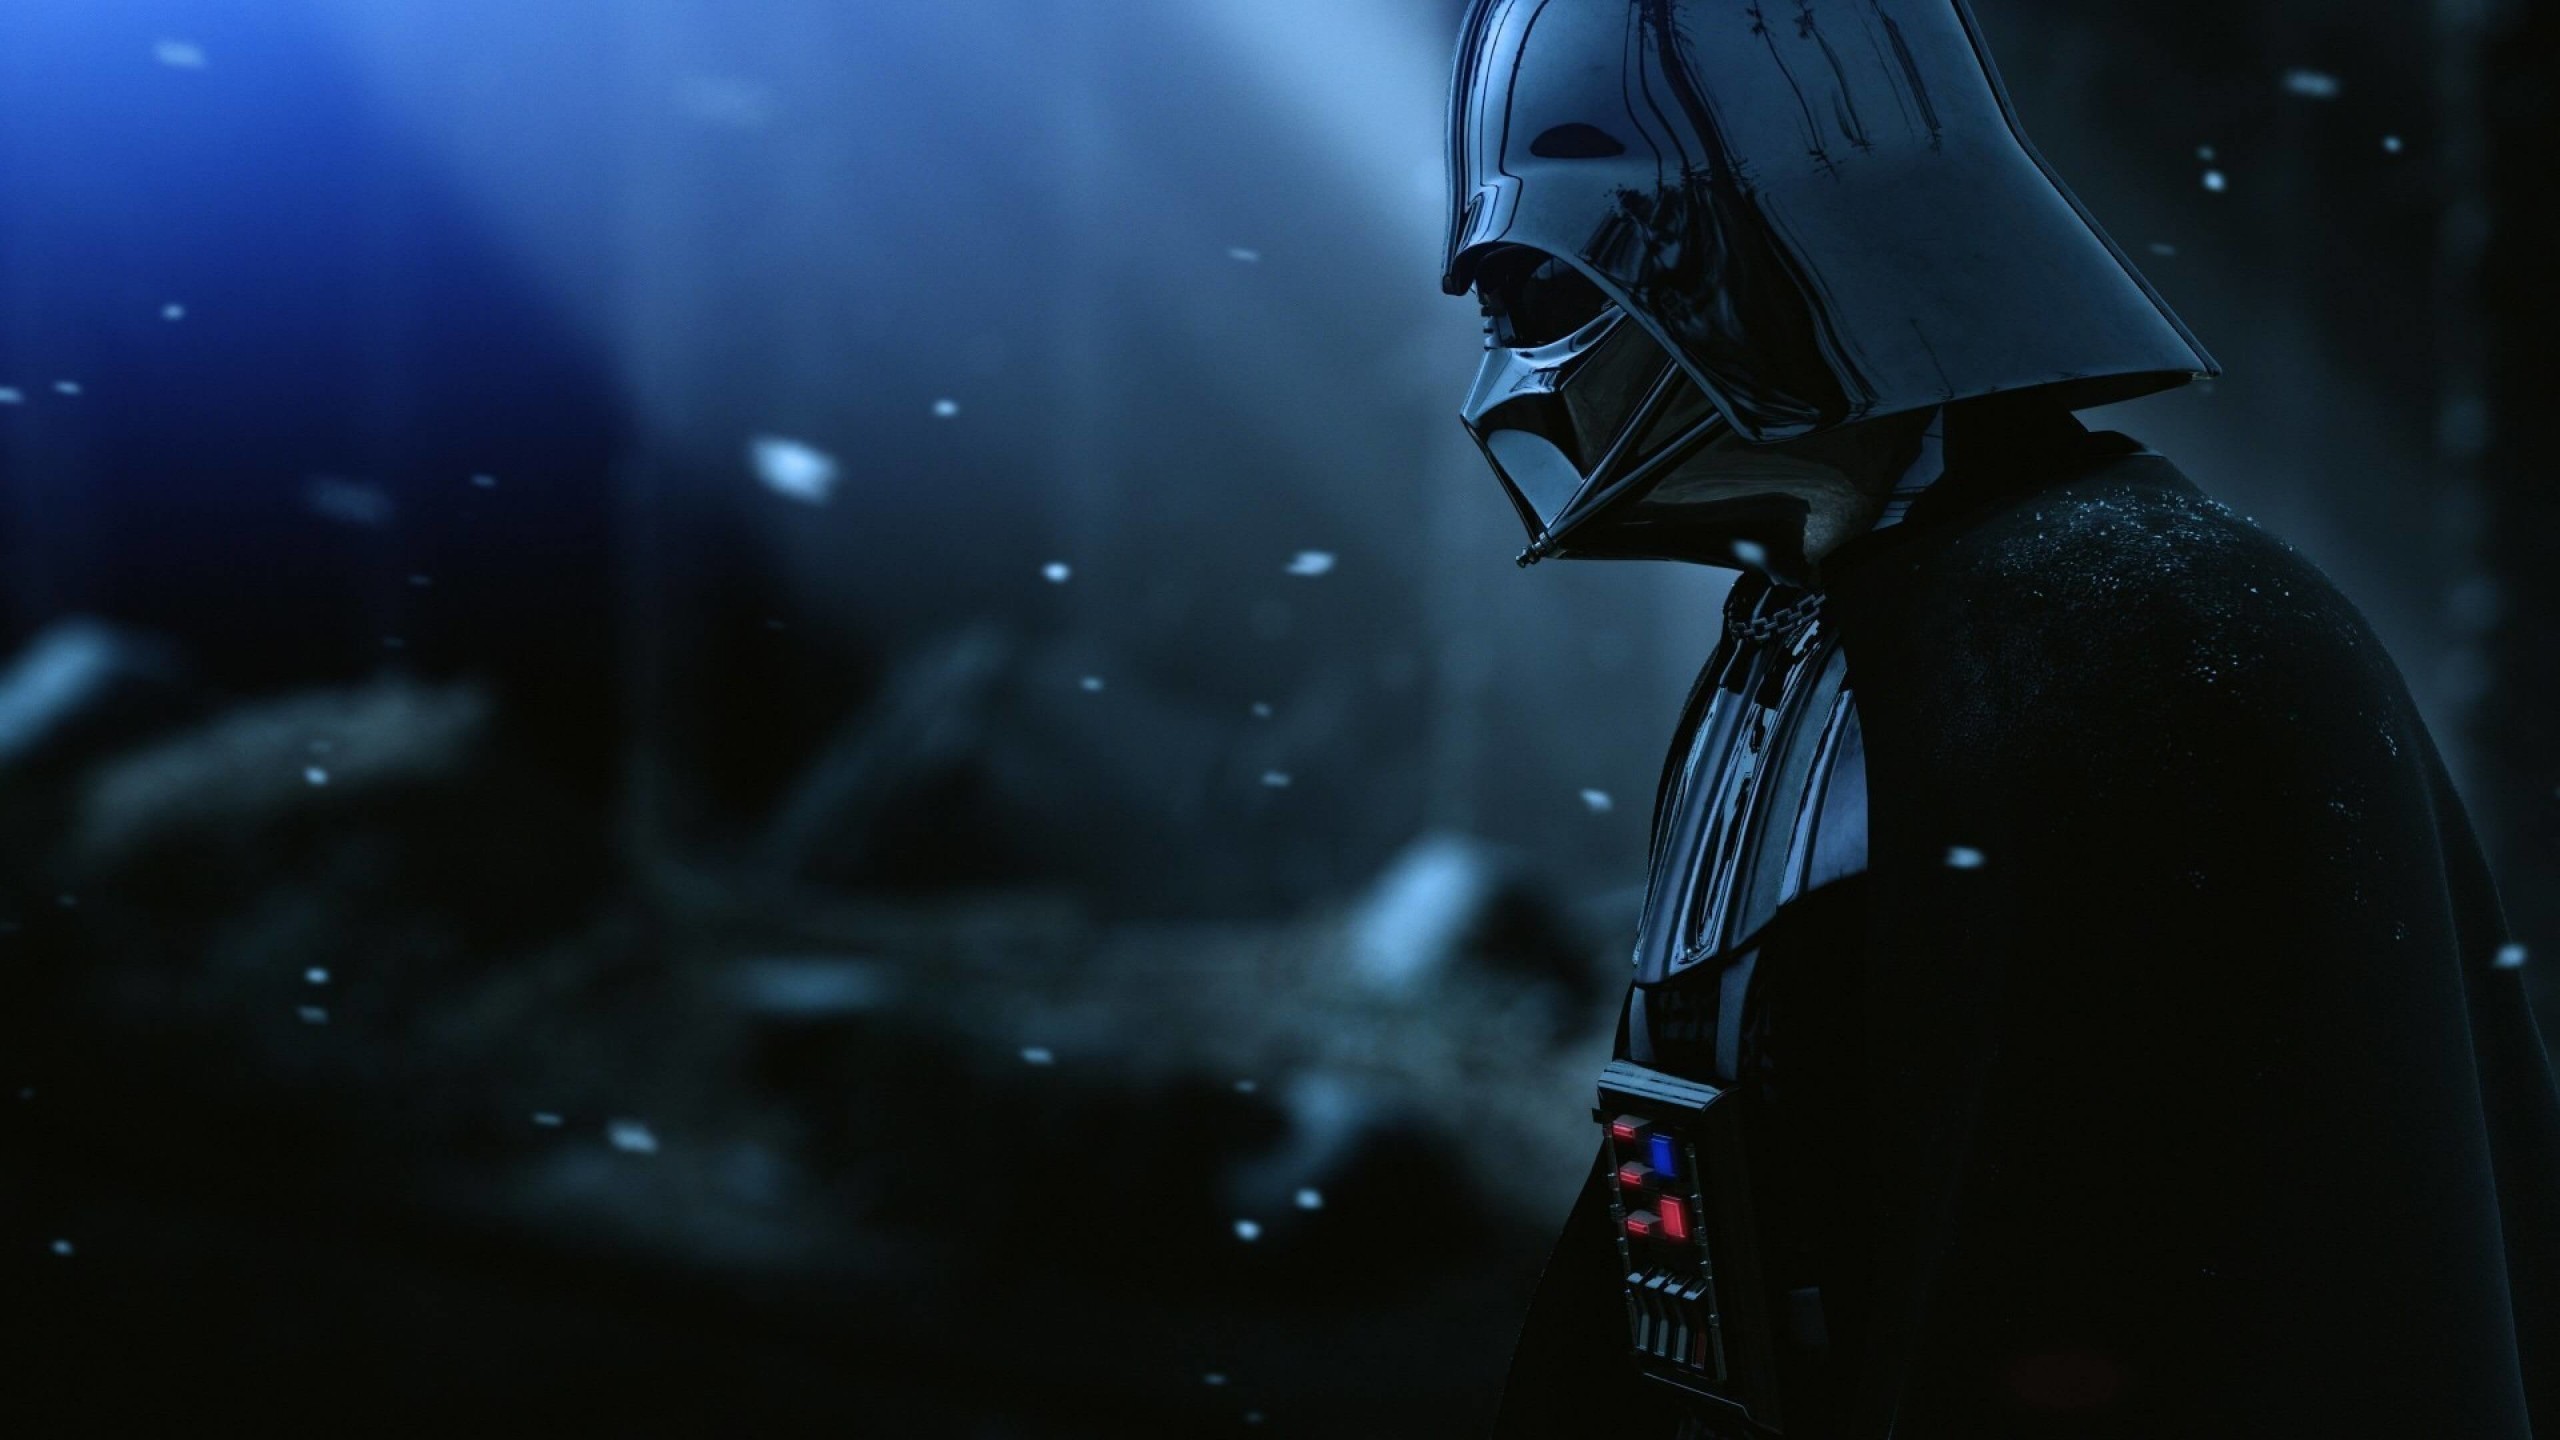 Darth Vader - The Force Unleashed 2 Wallpaper for Desktop 2560x1440